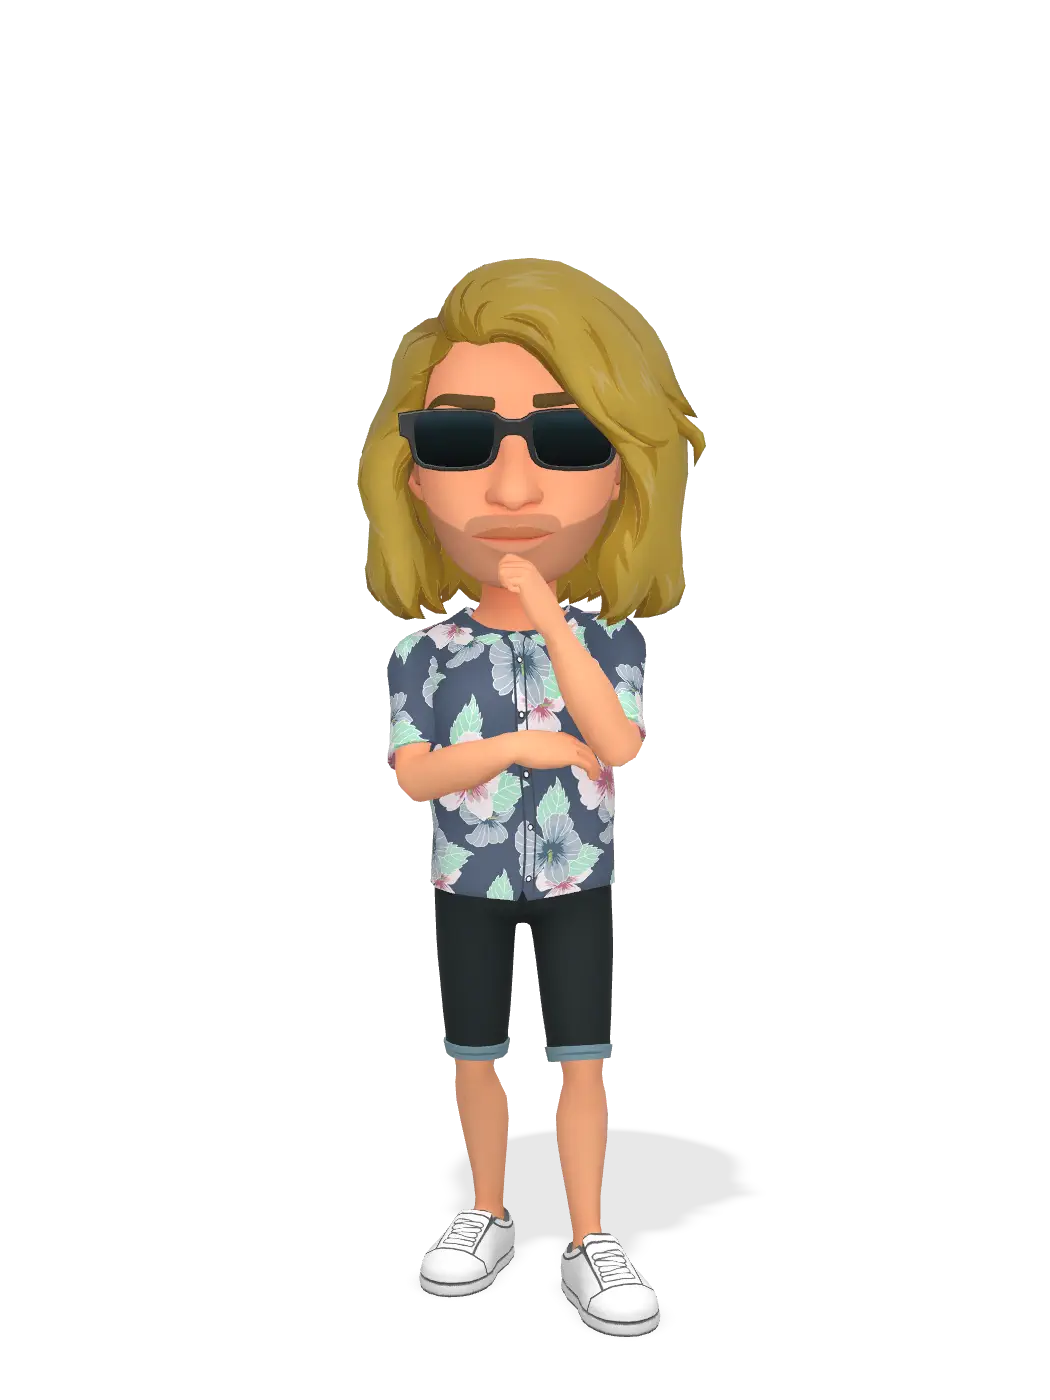 3D Bitmoji for hanshaupt avatar